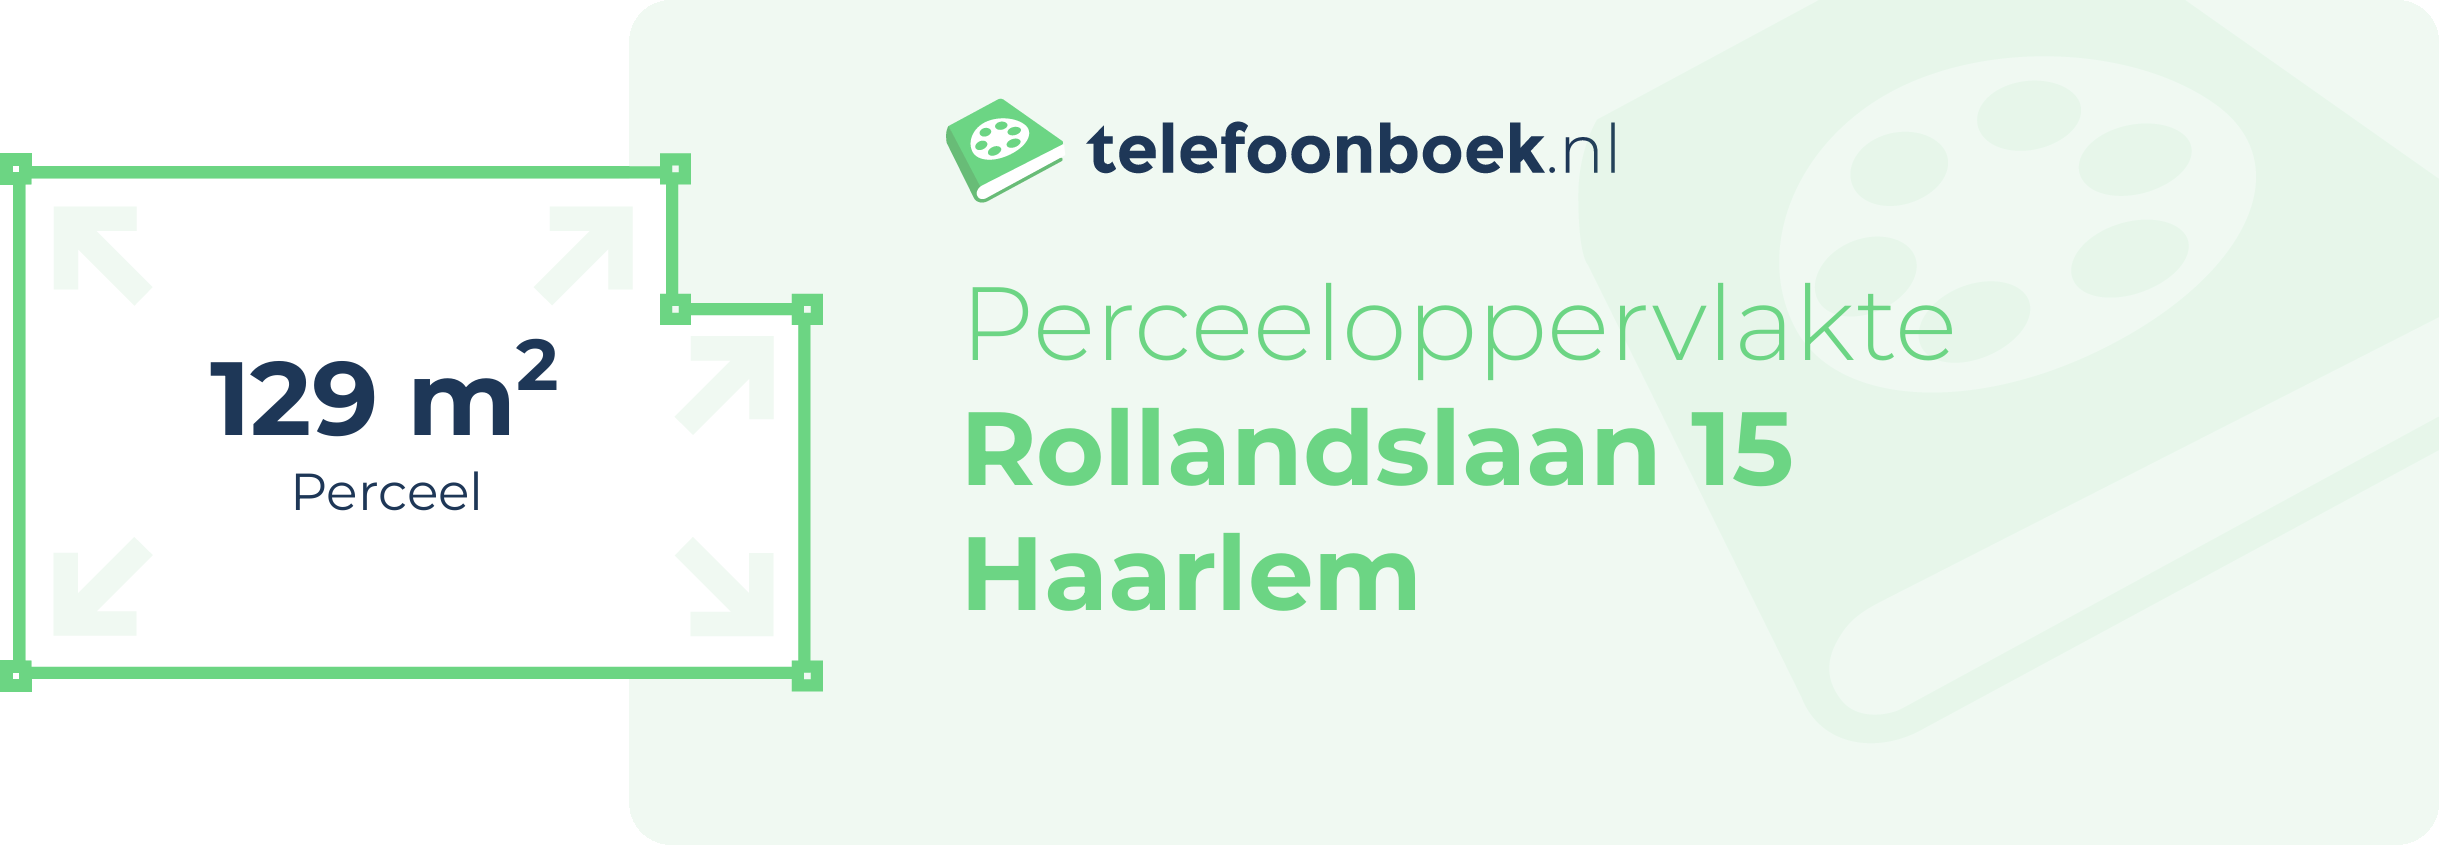 Perceeloppervlakte Rollandslaan 15 Haarlem